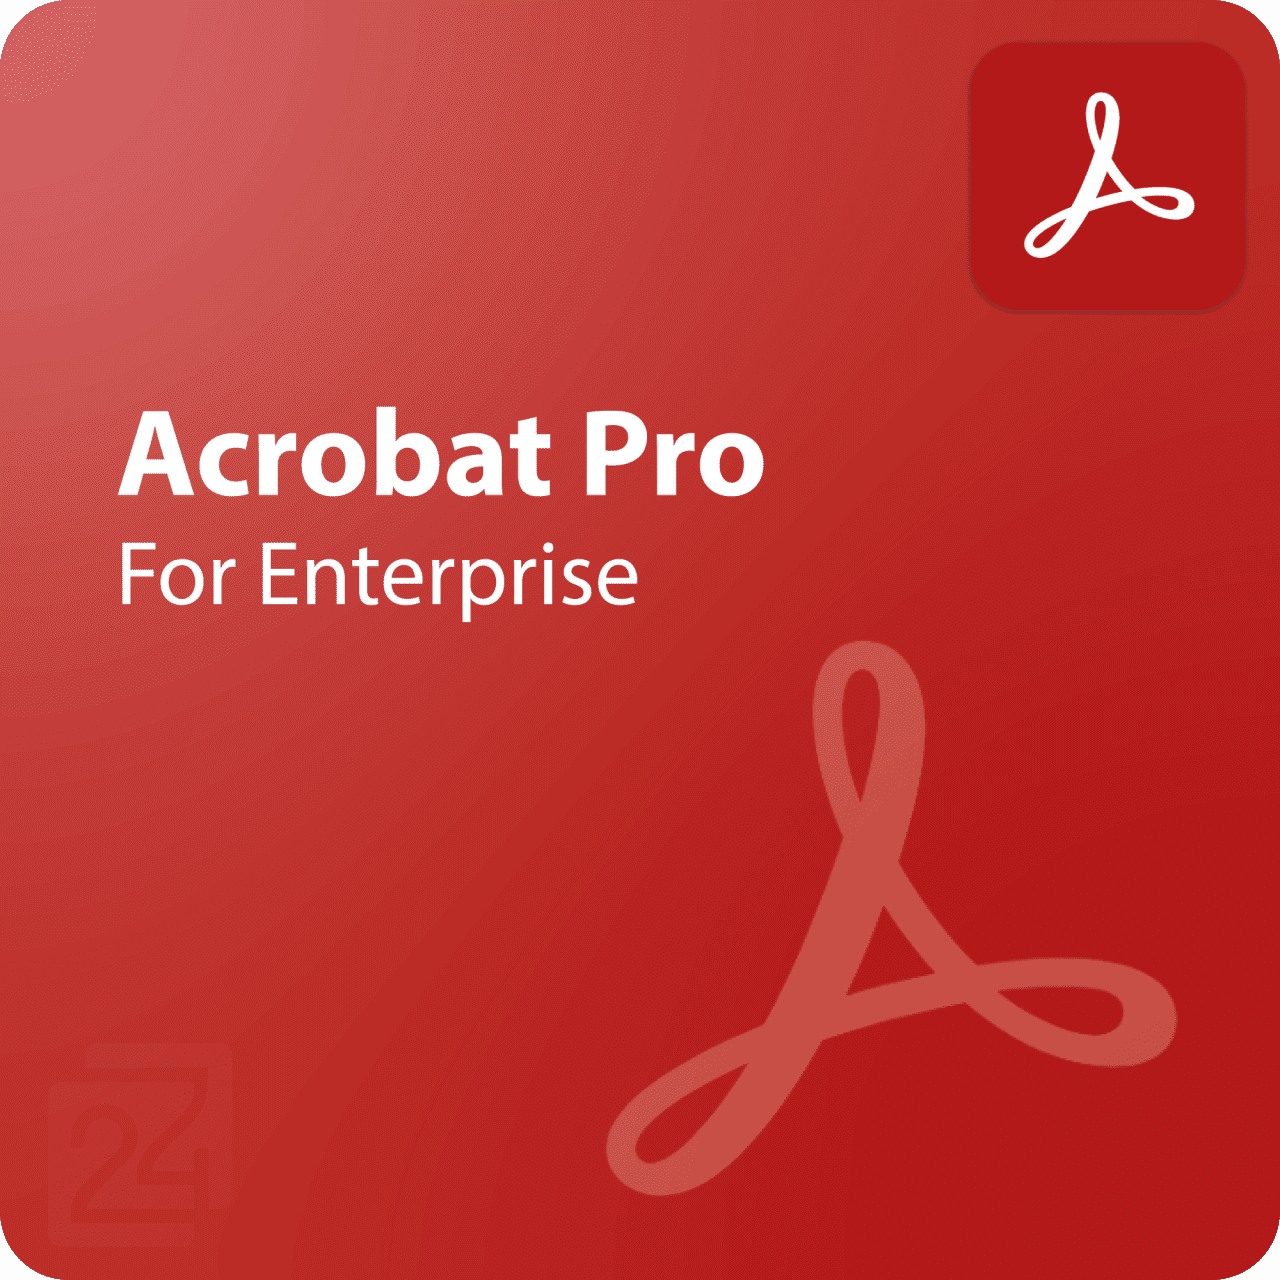 Acrobat Pro for Enterprise